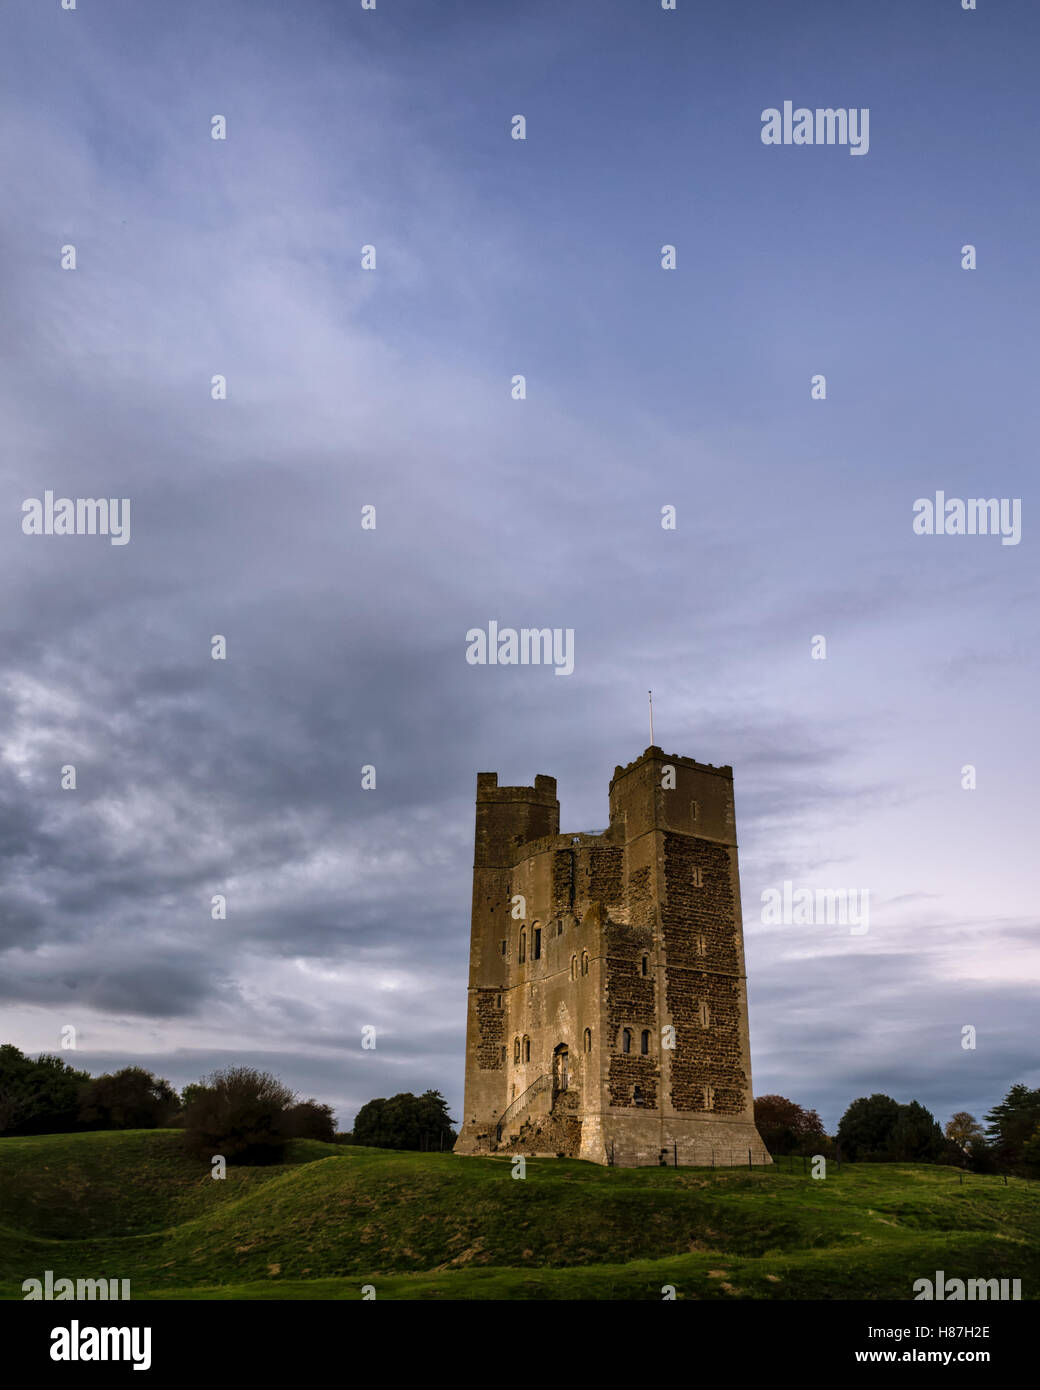 Orford, Ipswich. England Regno Unito. Orford Castle è un punto di riferimento culturale nel Suffolk, risalente al 12 secolo. Il castello dispone di un unica torre poligonale. Fotografato nel crepuscolo per luce morbida ancora conserva un drammatico cielo come cambia il colore nel blu ora. Foto Stock